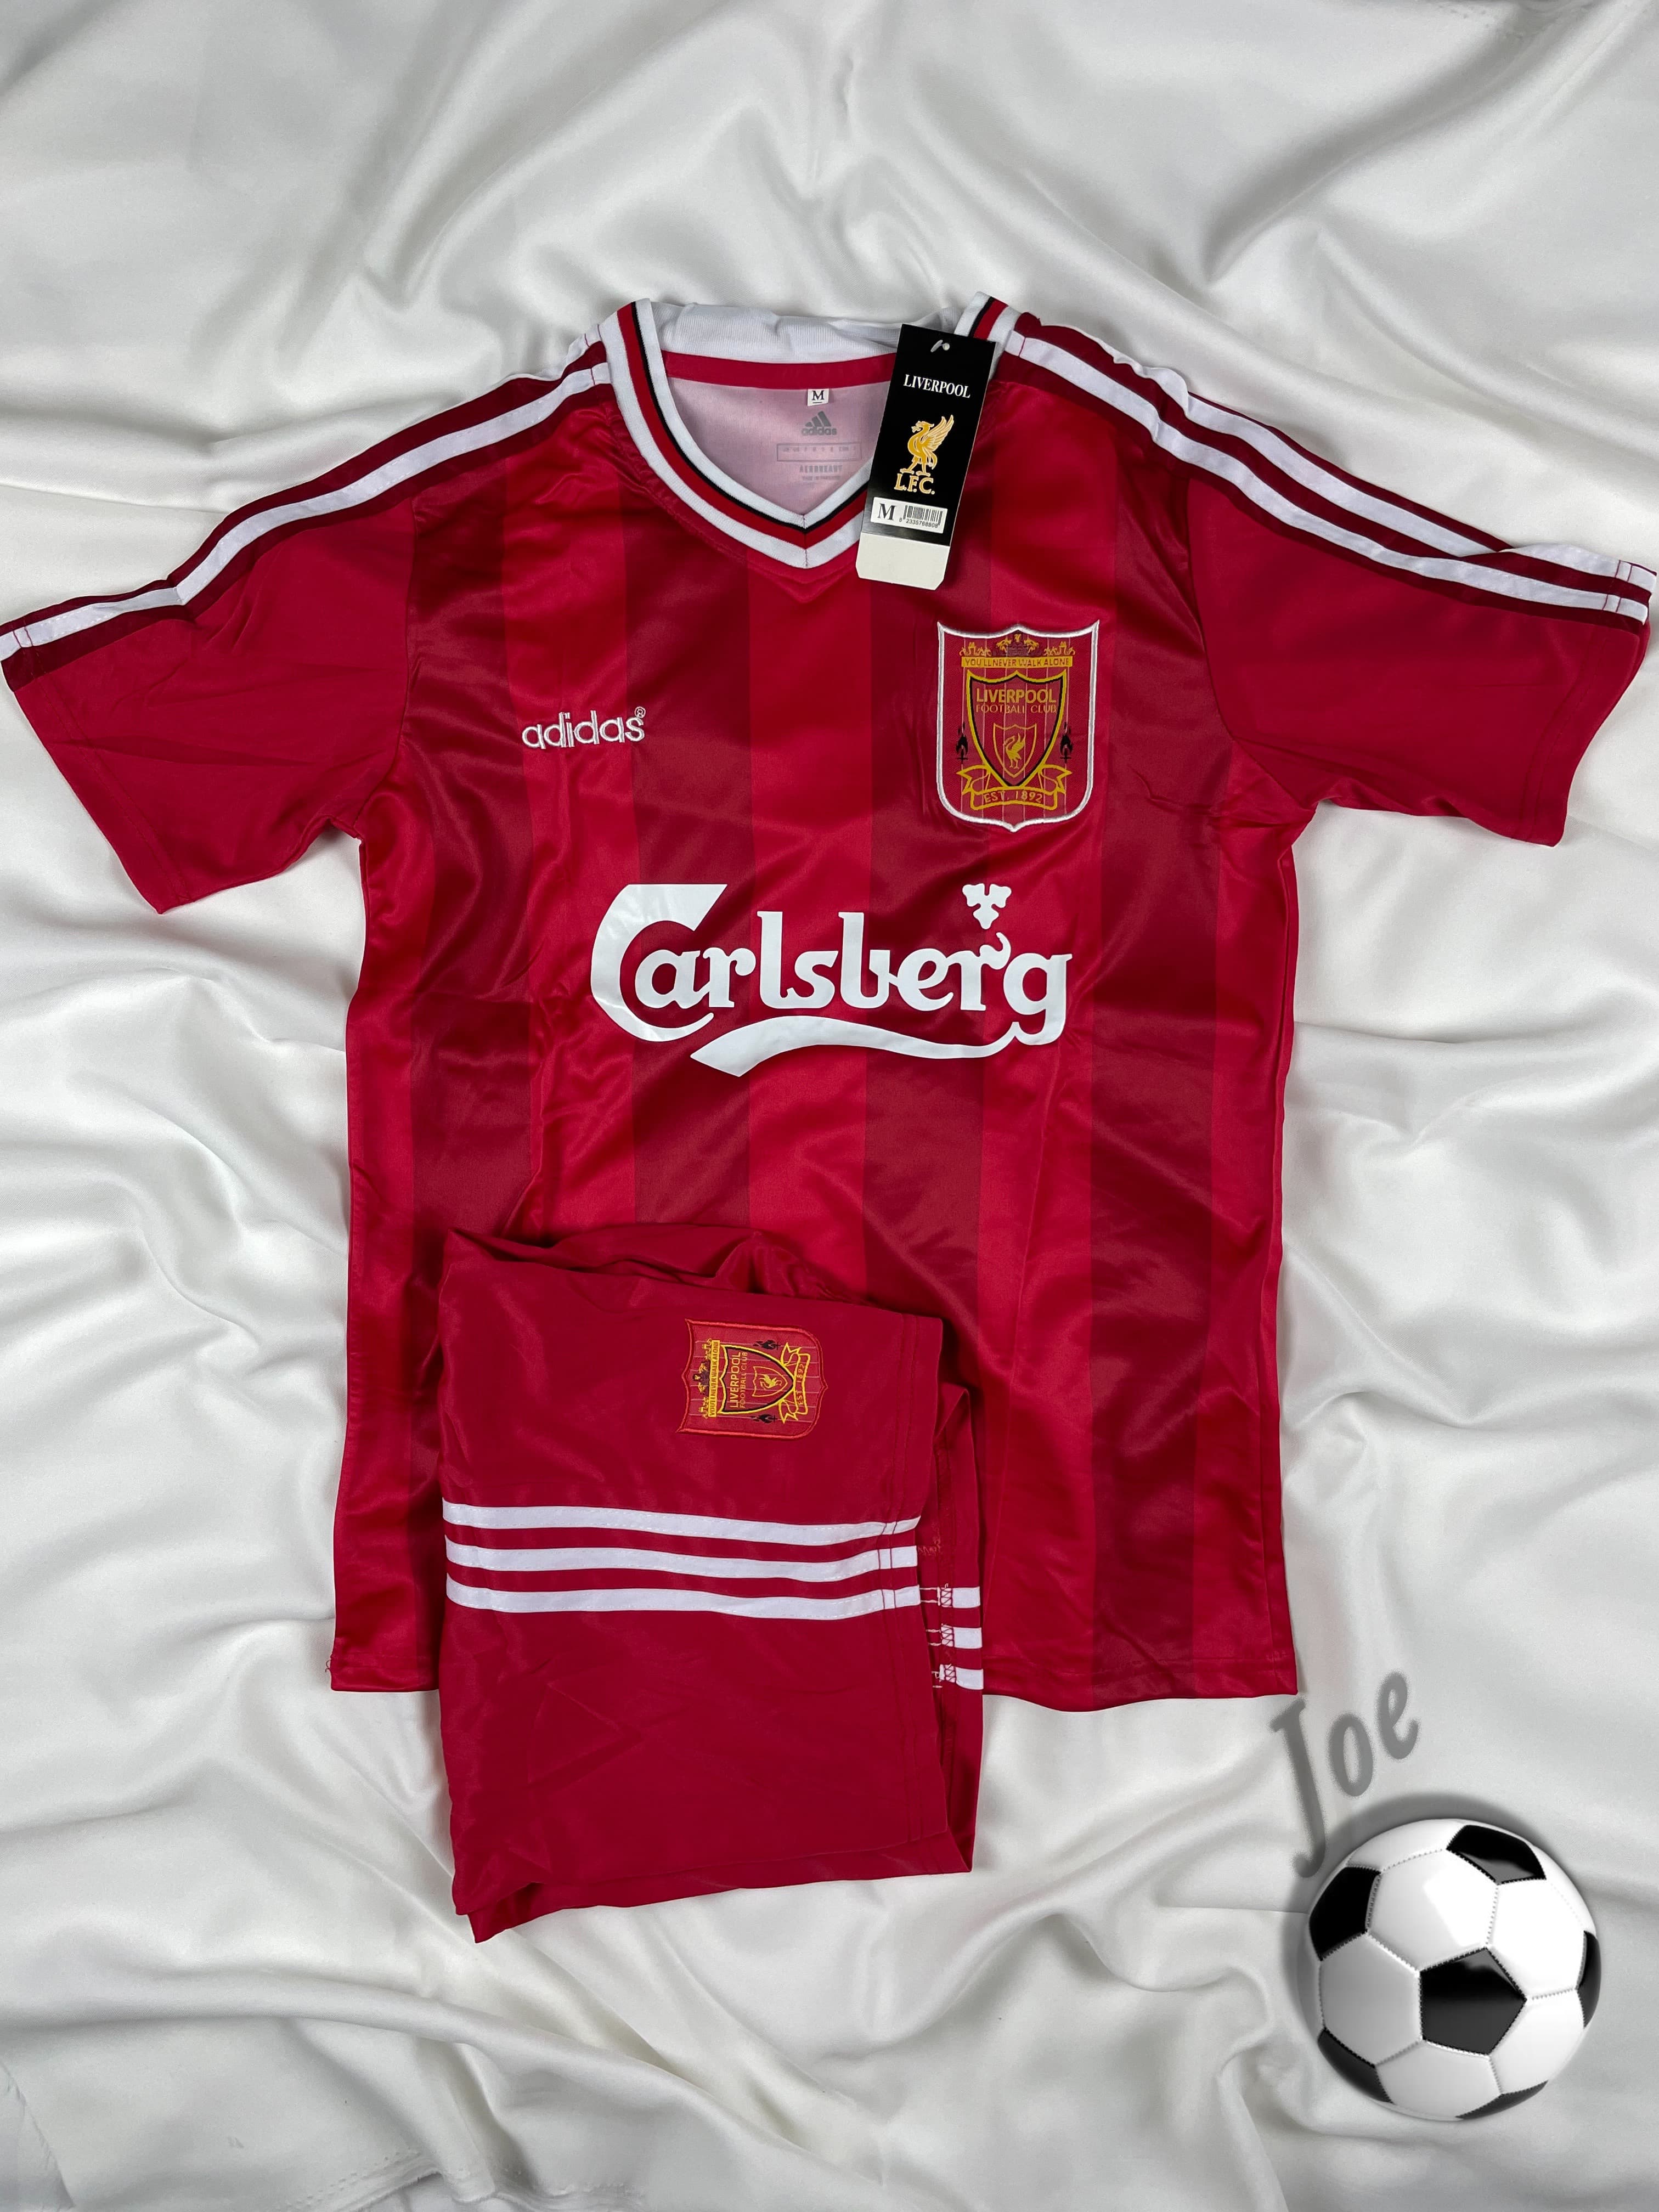 ชุดบอลย้อนยุค Liverpool (Red, 1995-1996) เสื้อบอลและกางเกงบอลผู้ชาย ปี 1995-1996